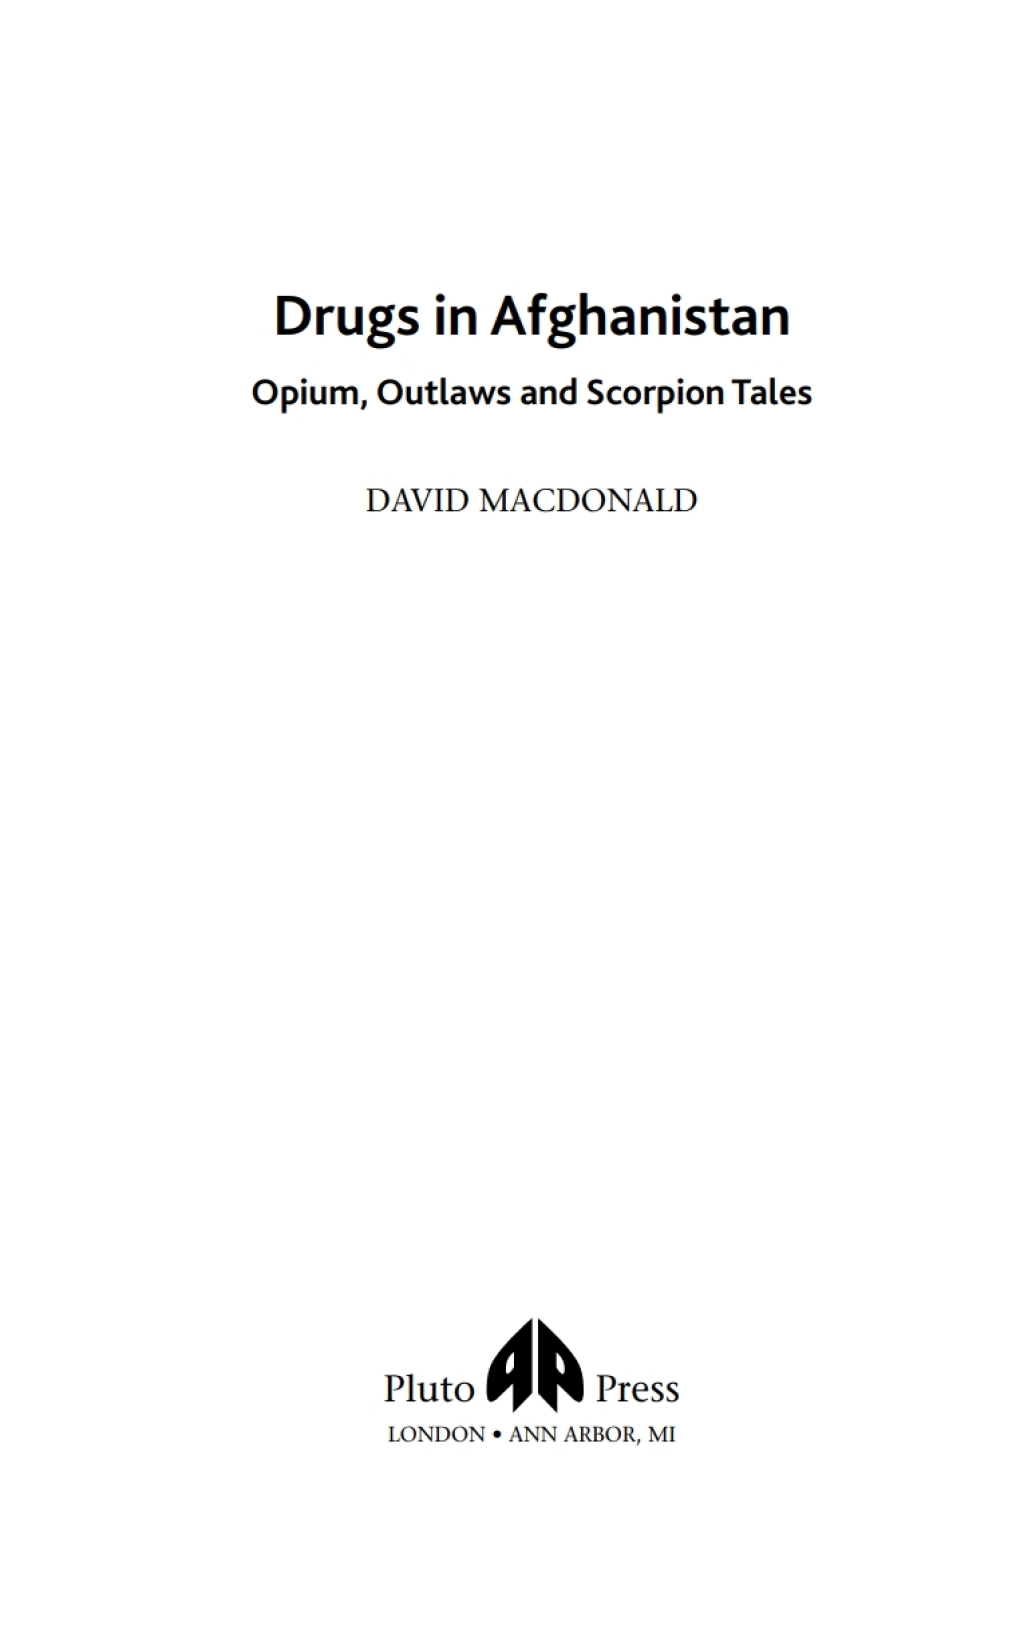 Drugs in Afghanistan (eBook) - David Macdonald